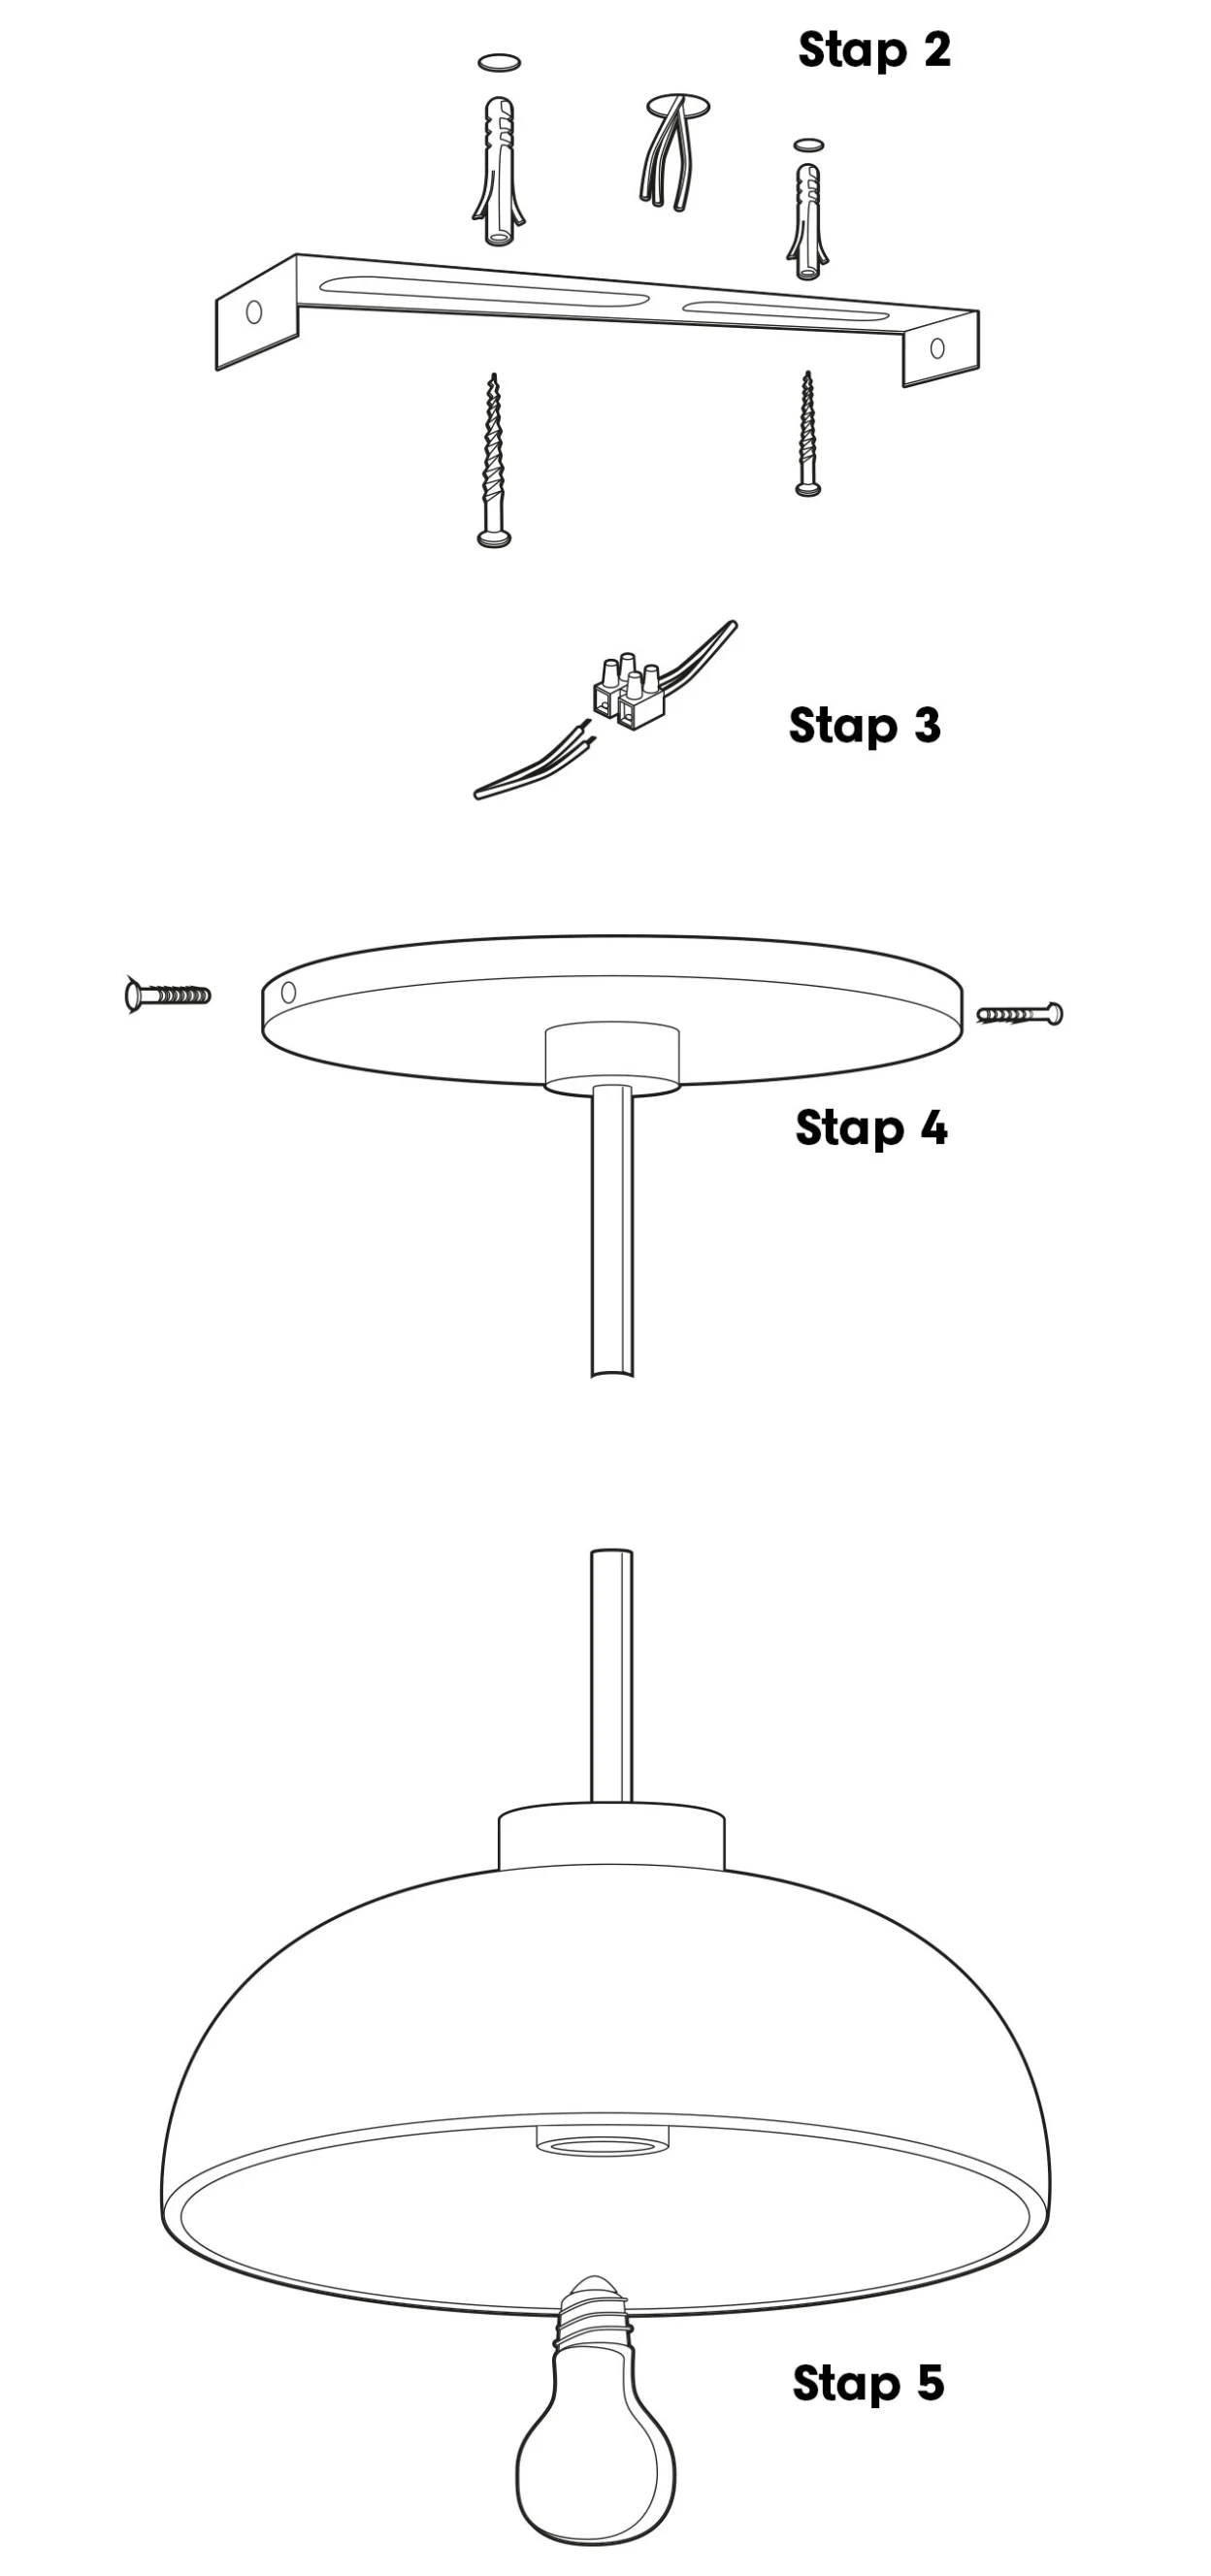 NL-BE-CP-Alles-over-verlichting ophangen hanglamp stappenplan